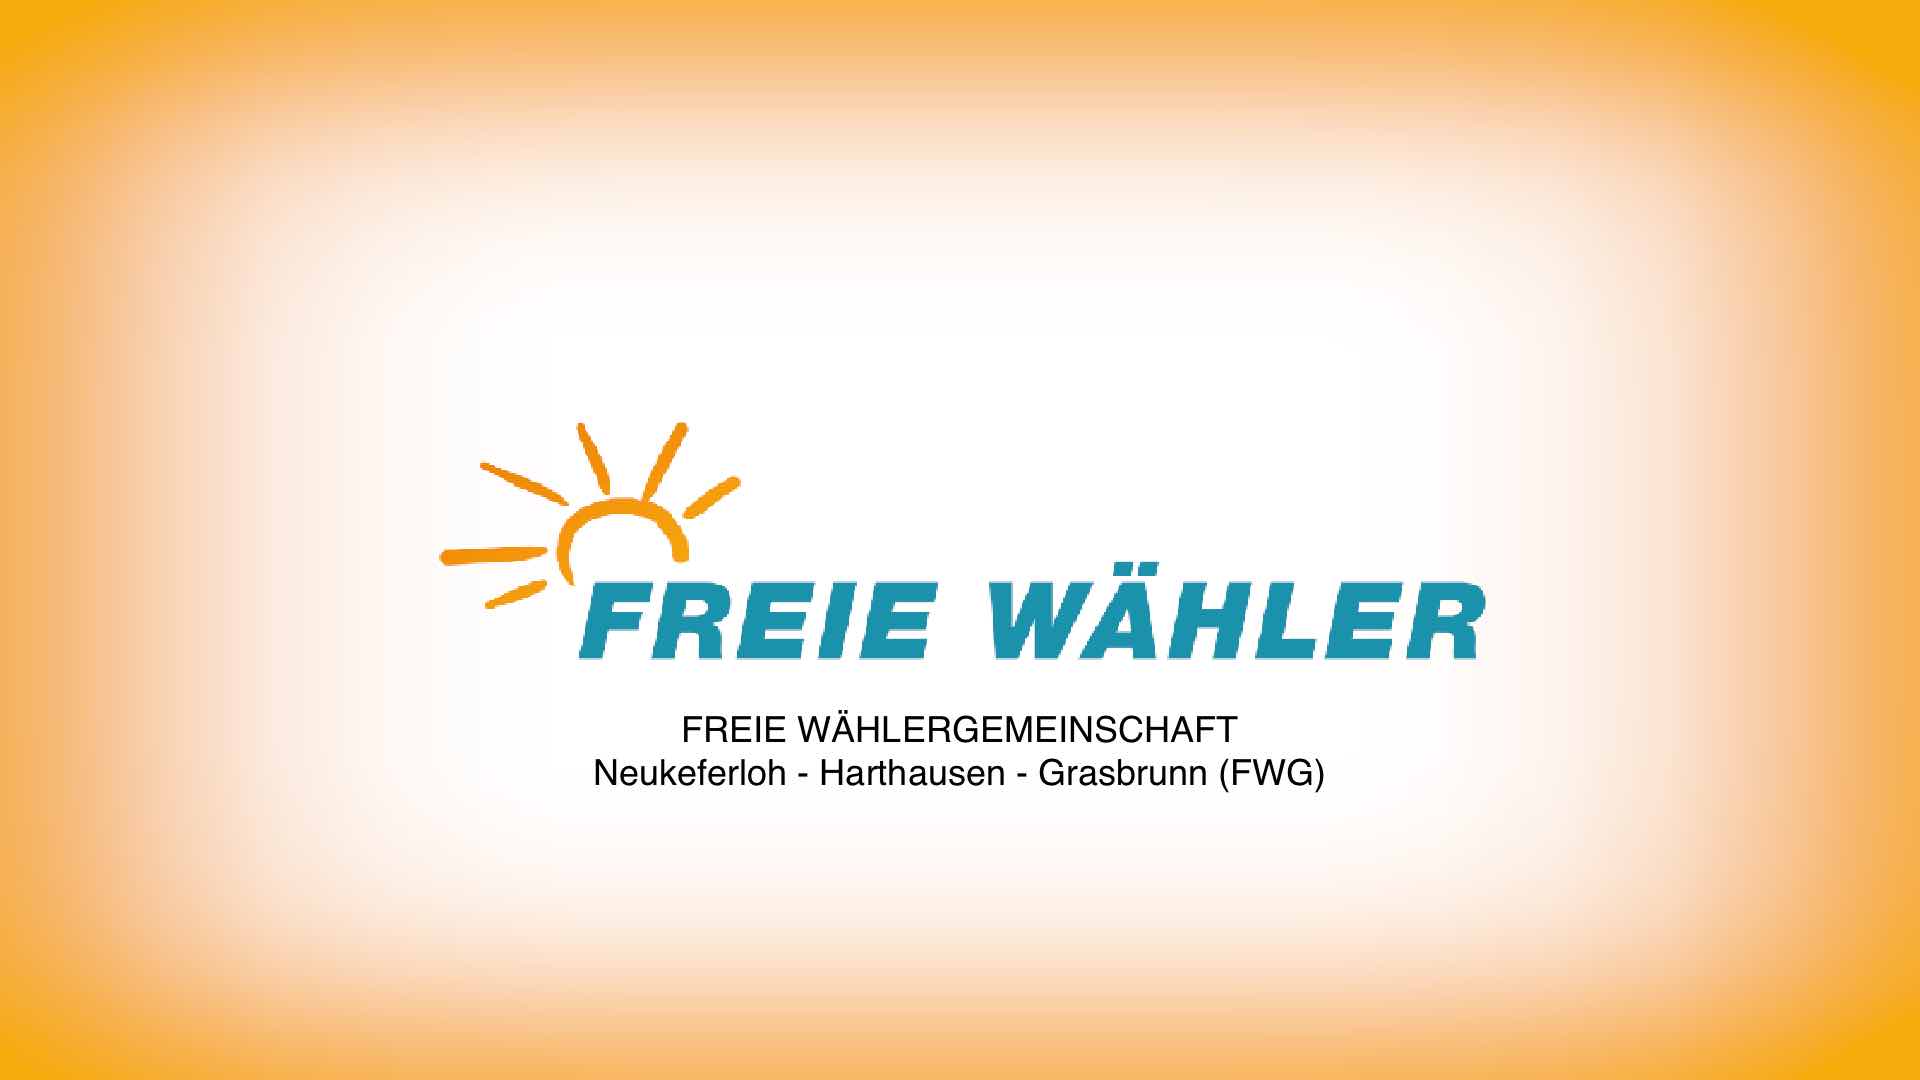 Freie Wählergemeinschaft Neukeferloh - Harthausen - Grasbrunn (FWG)